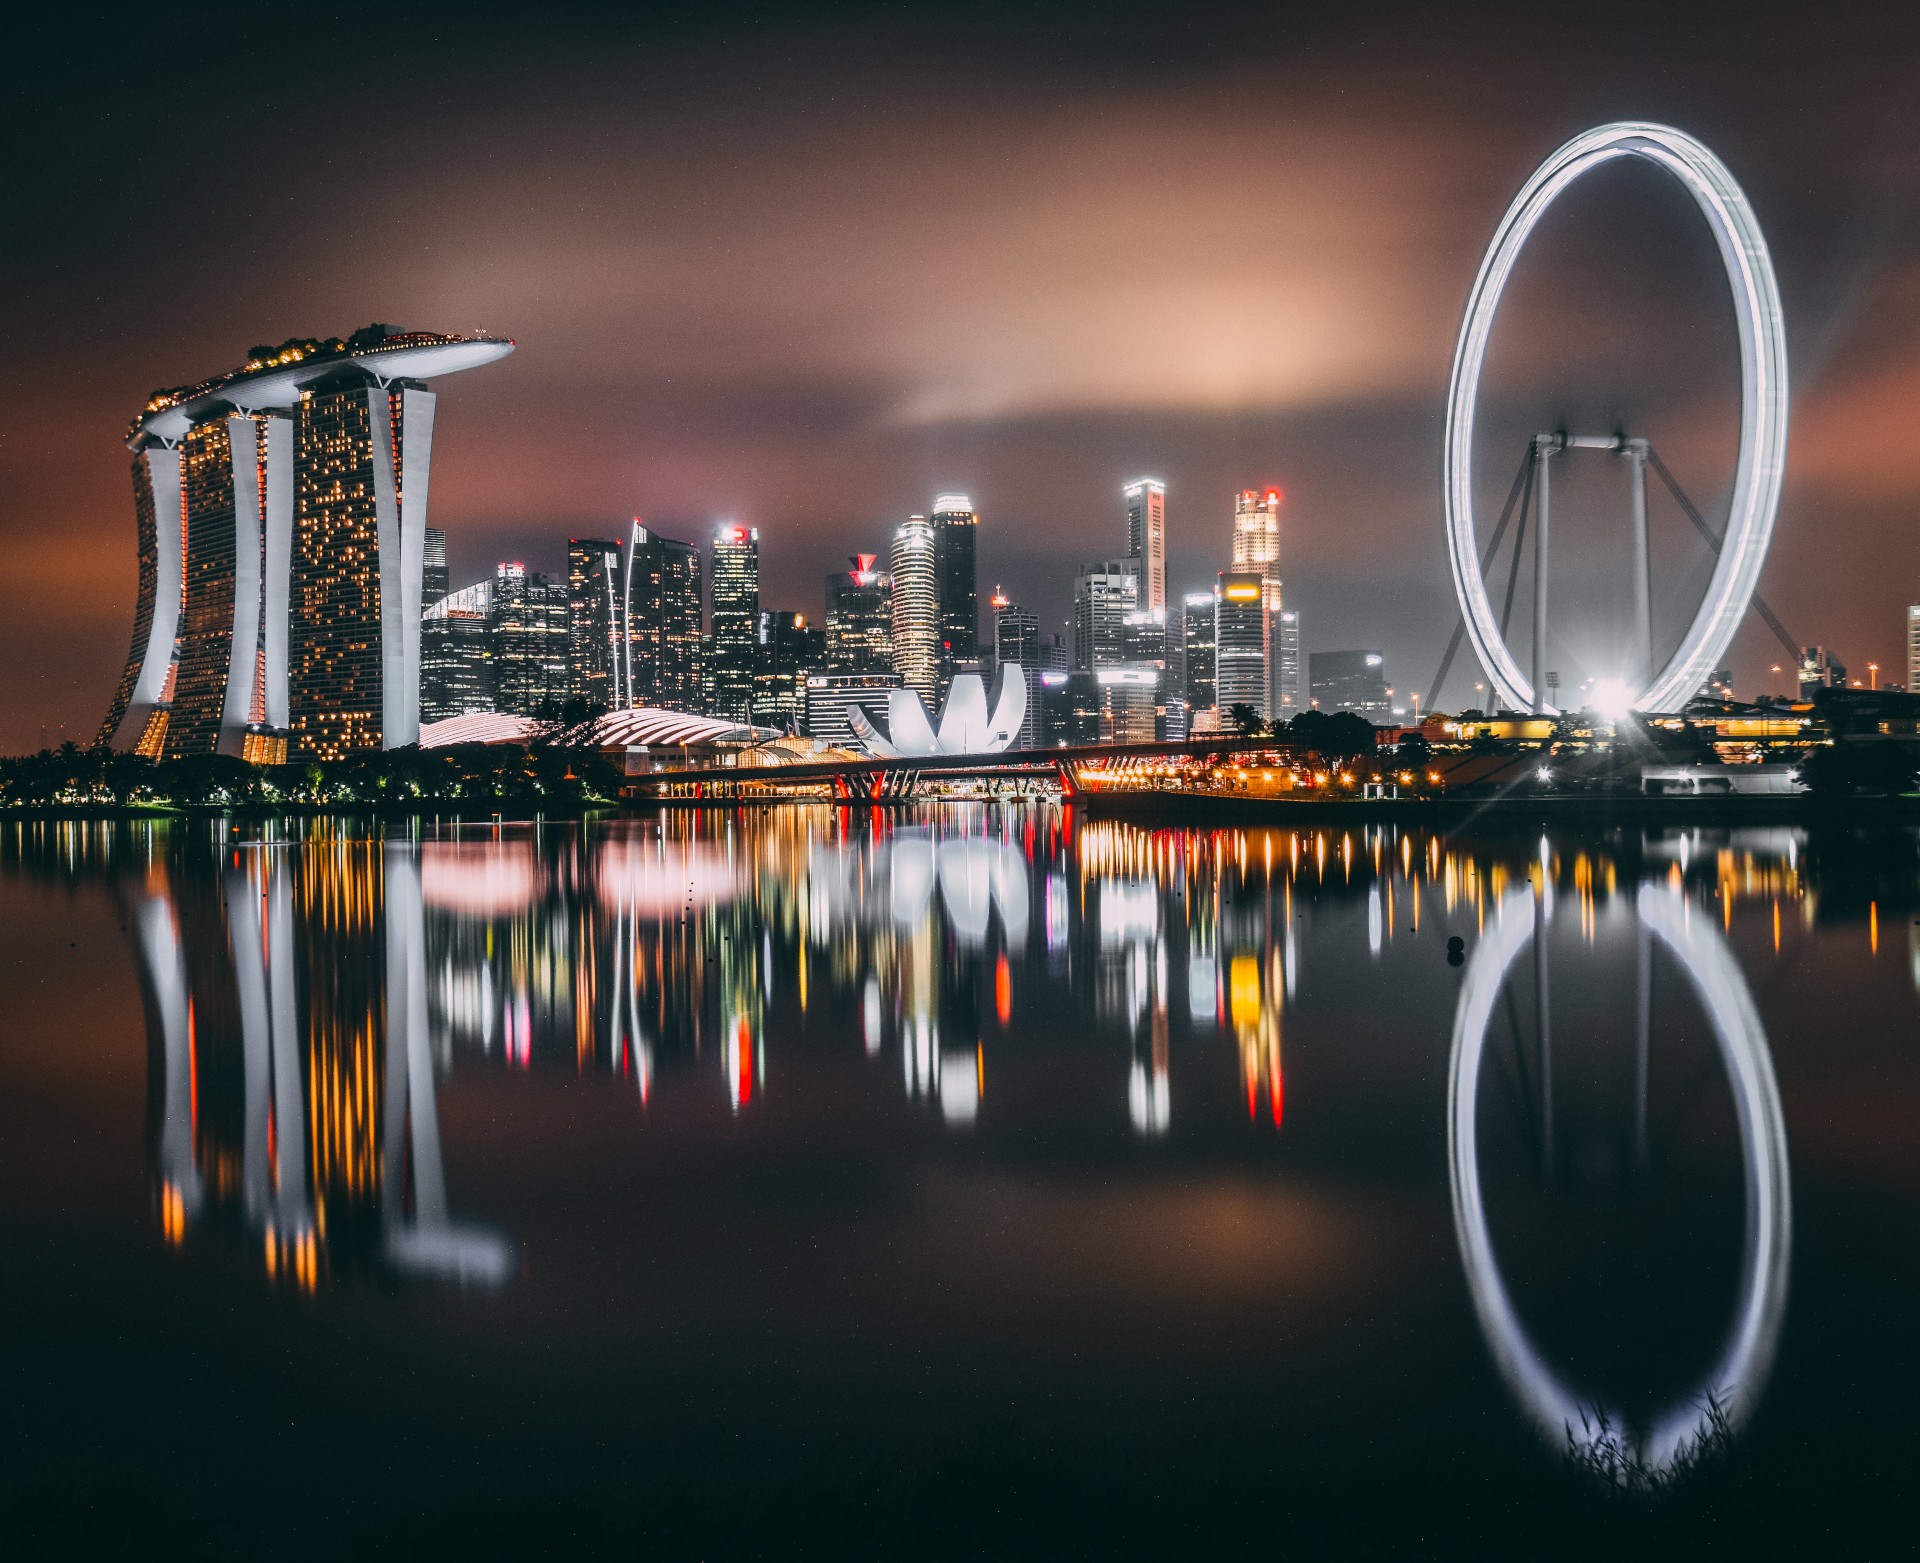 Trends to Watch 2019: Smart Cities in Asia Get Smarter